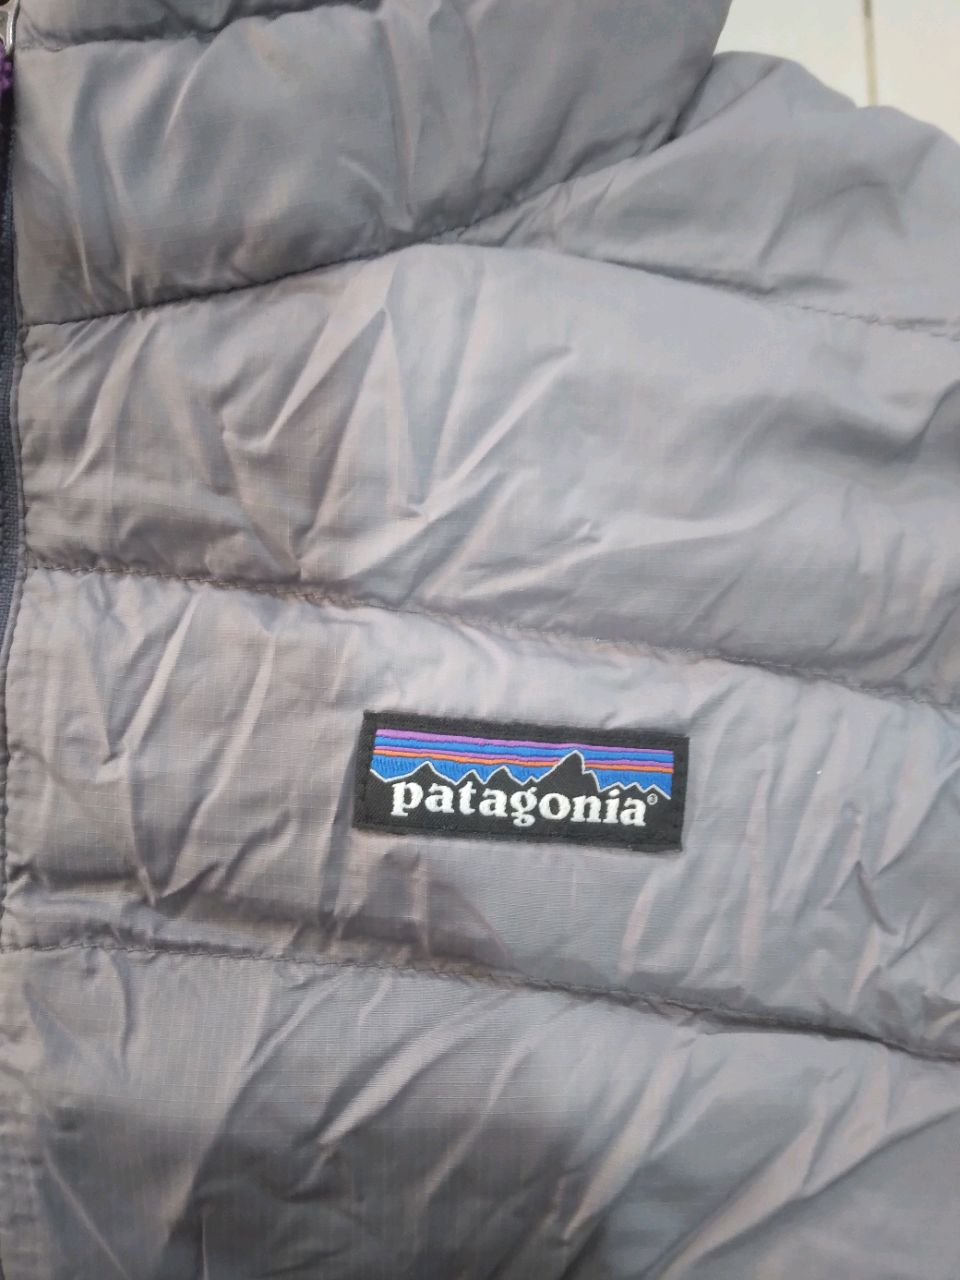 Patagonia Jacket - 18 piece